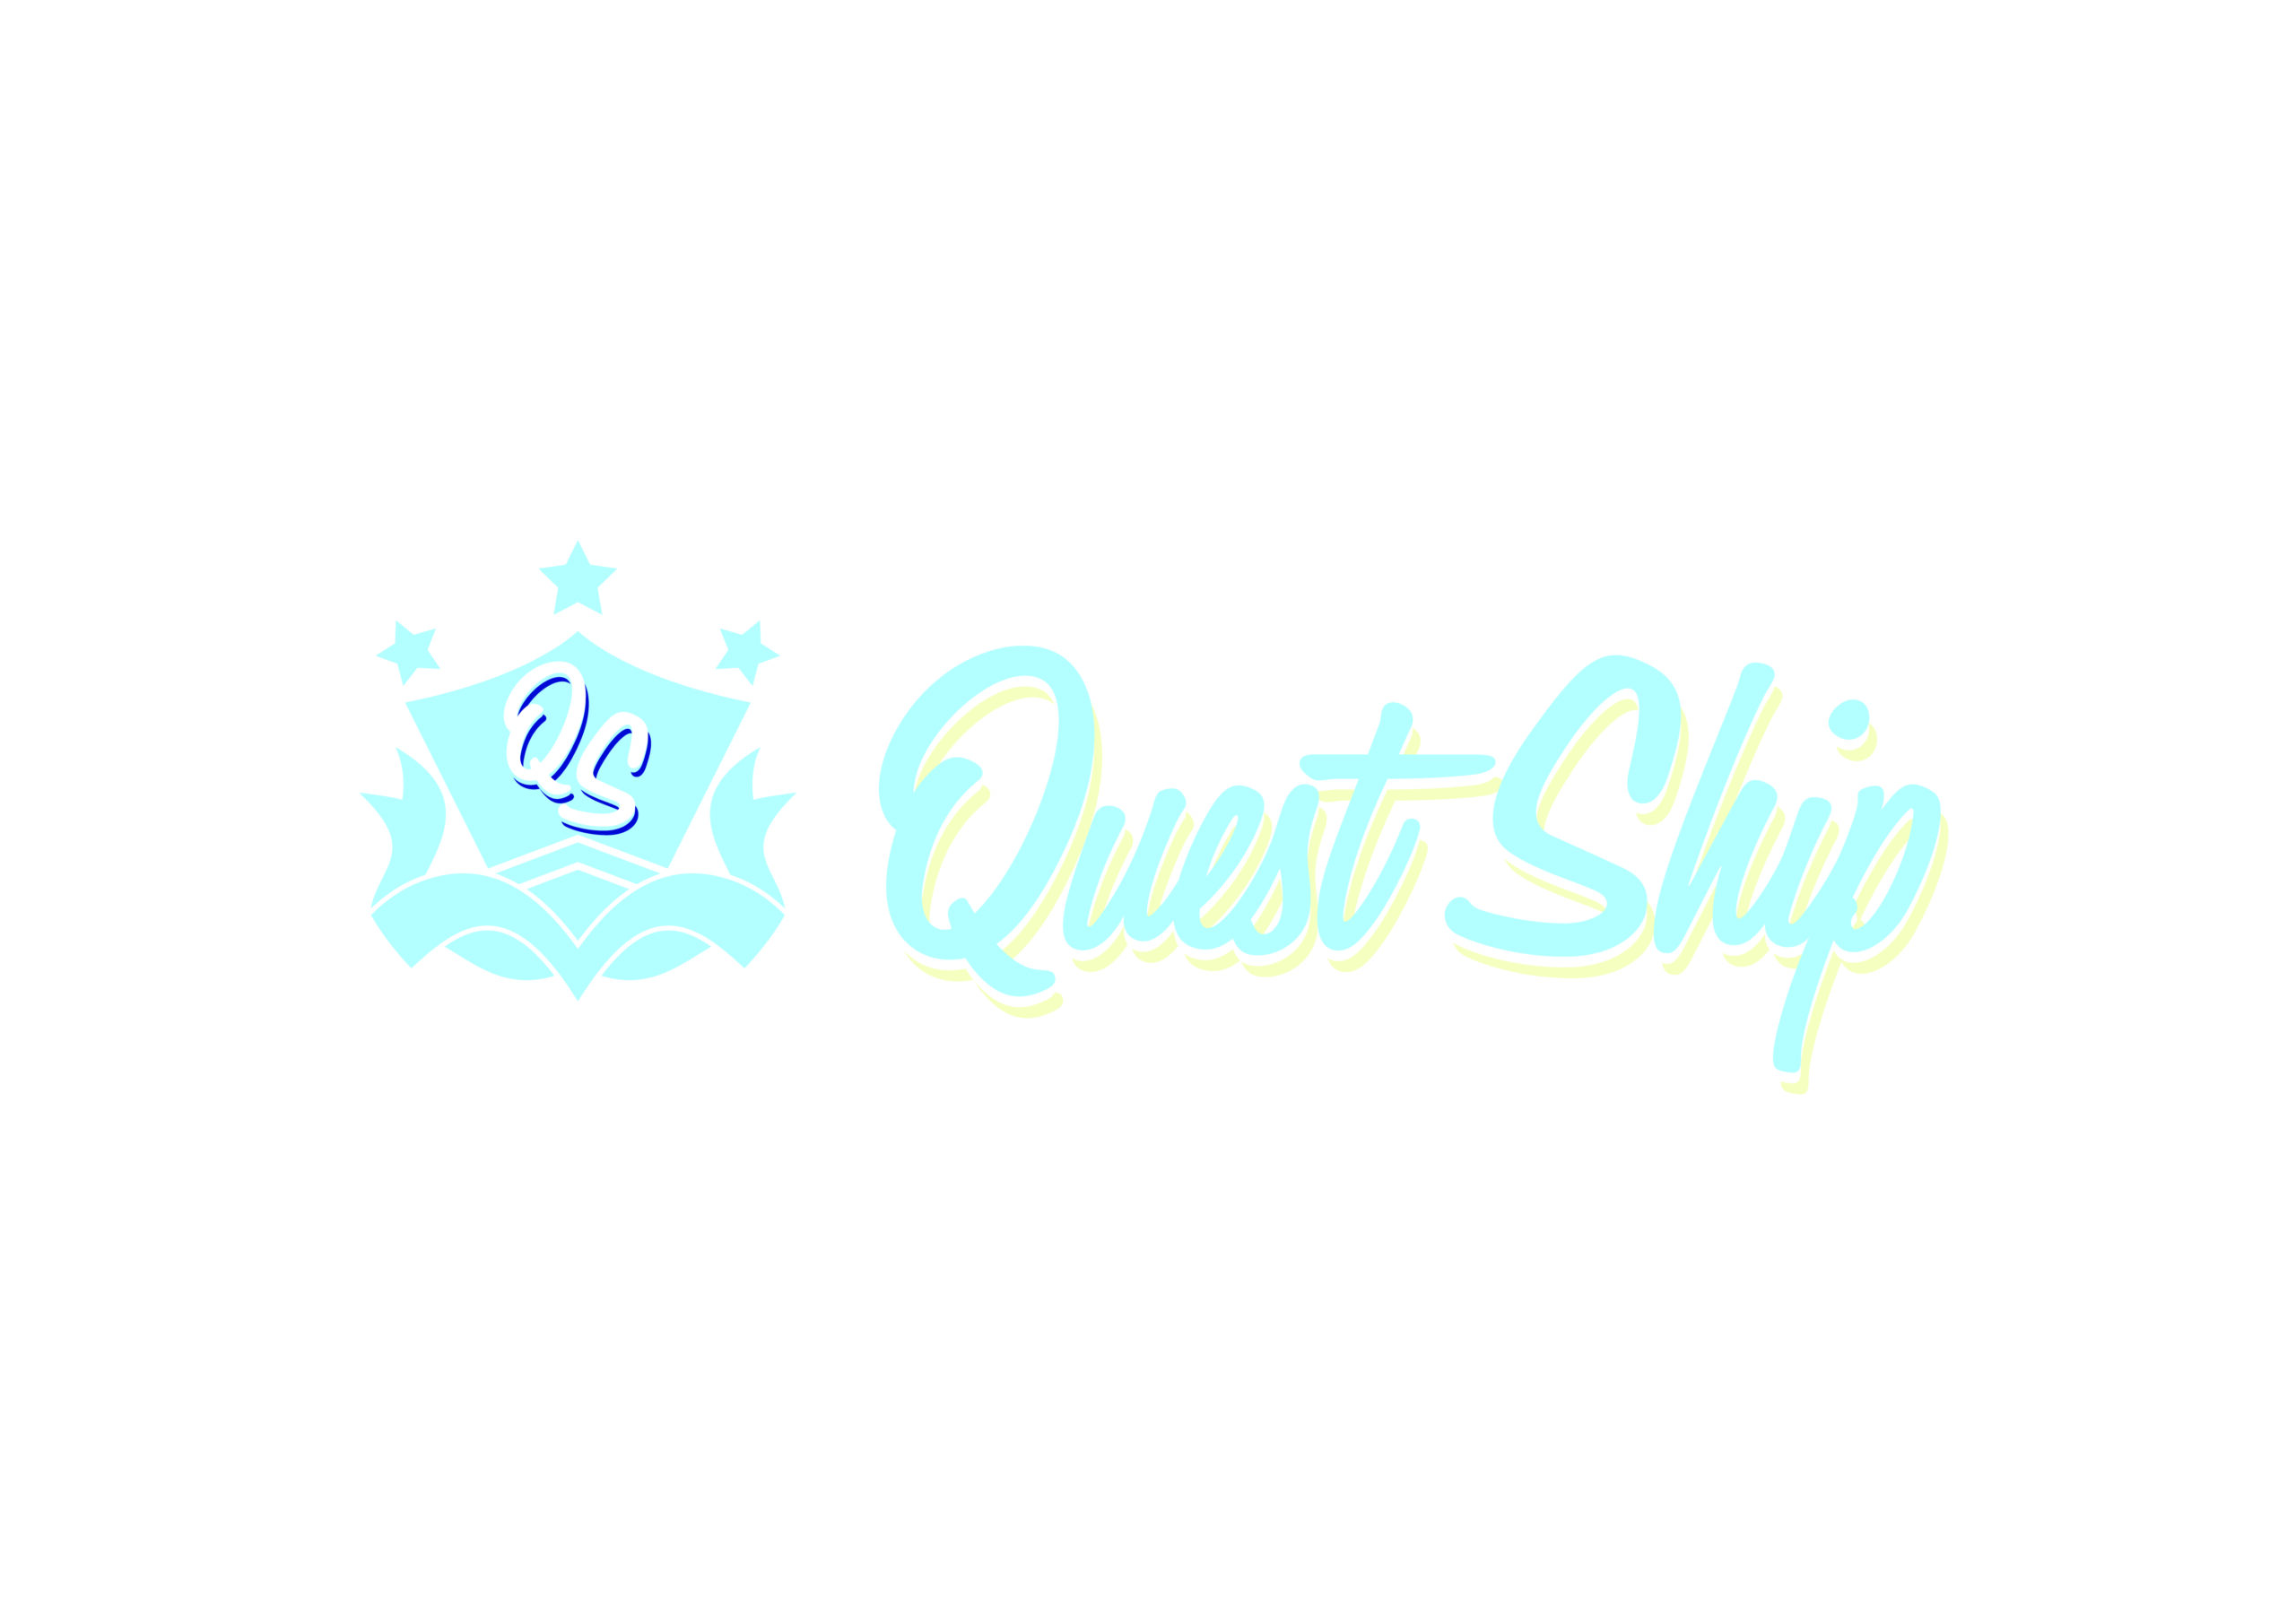 経験豊富なクリエイター陣がつくる 新アイドルグループ「Quest Ship」がついに船出！メンバー情報初公開！：Quest Ship